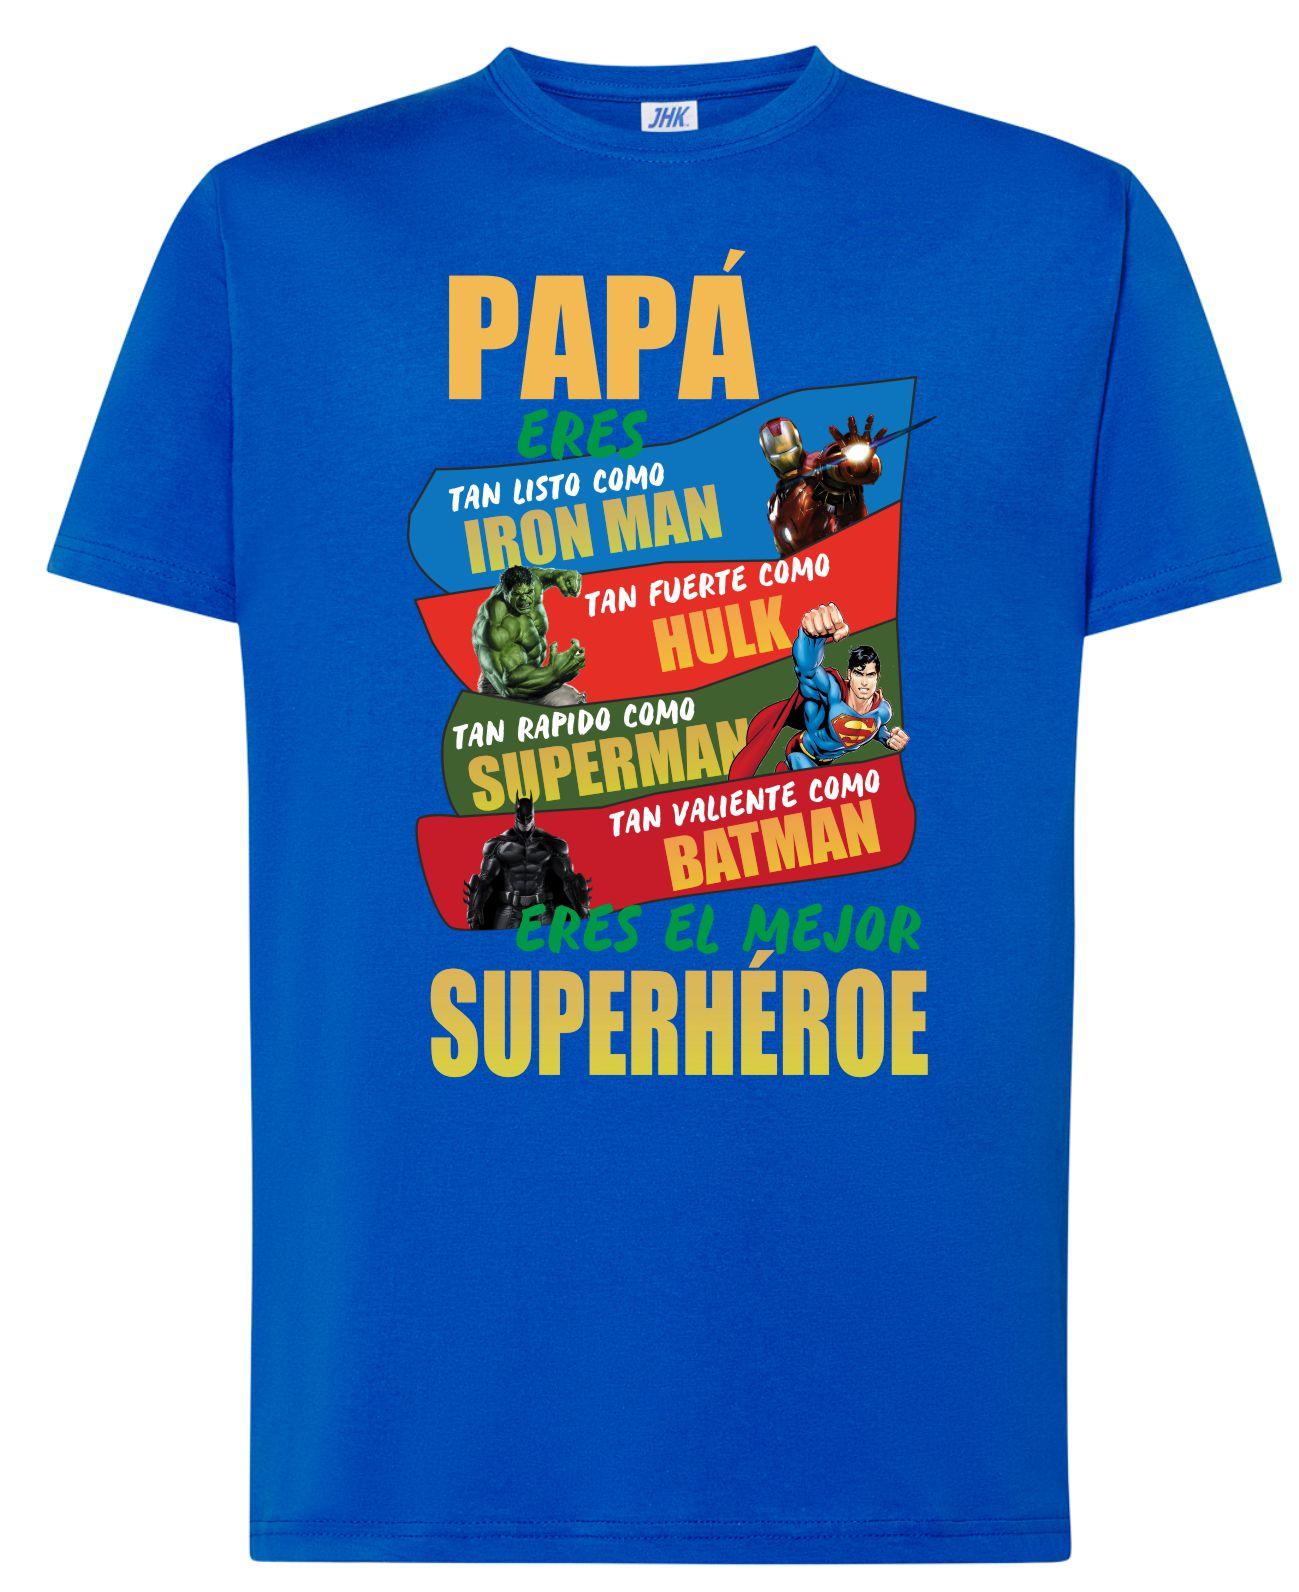 Compra tu Camiseta del Padre - Papa eres...: 9,80 €